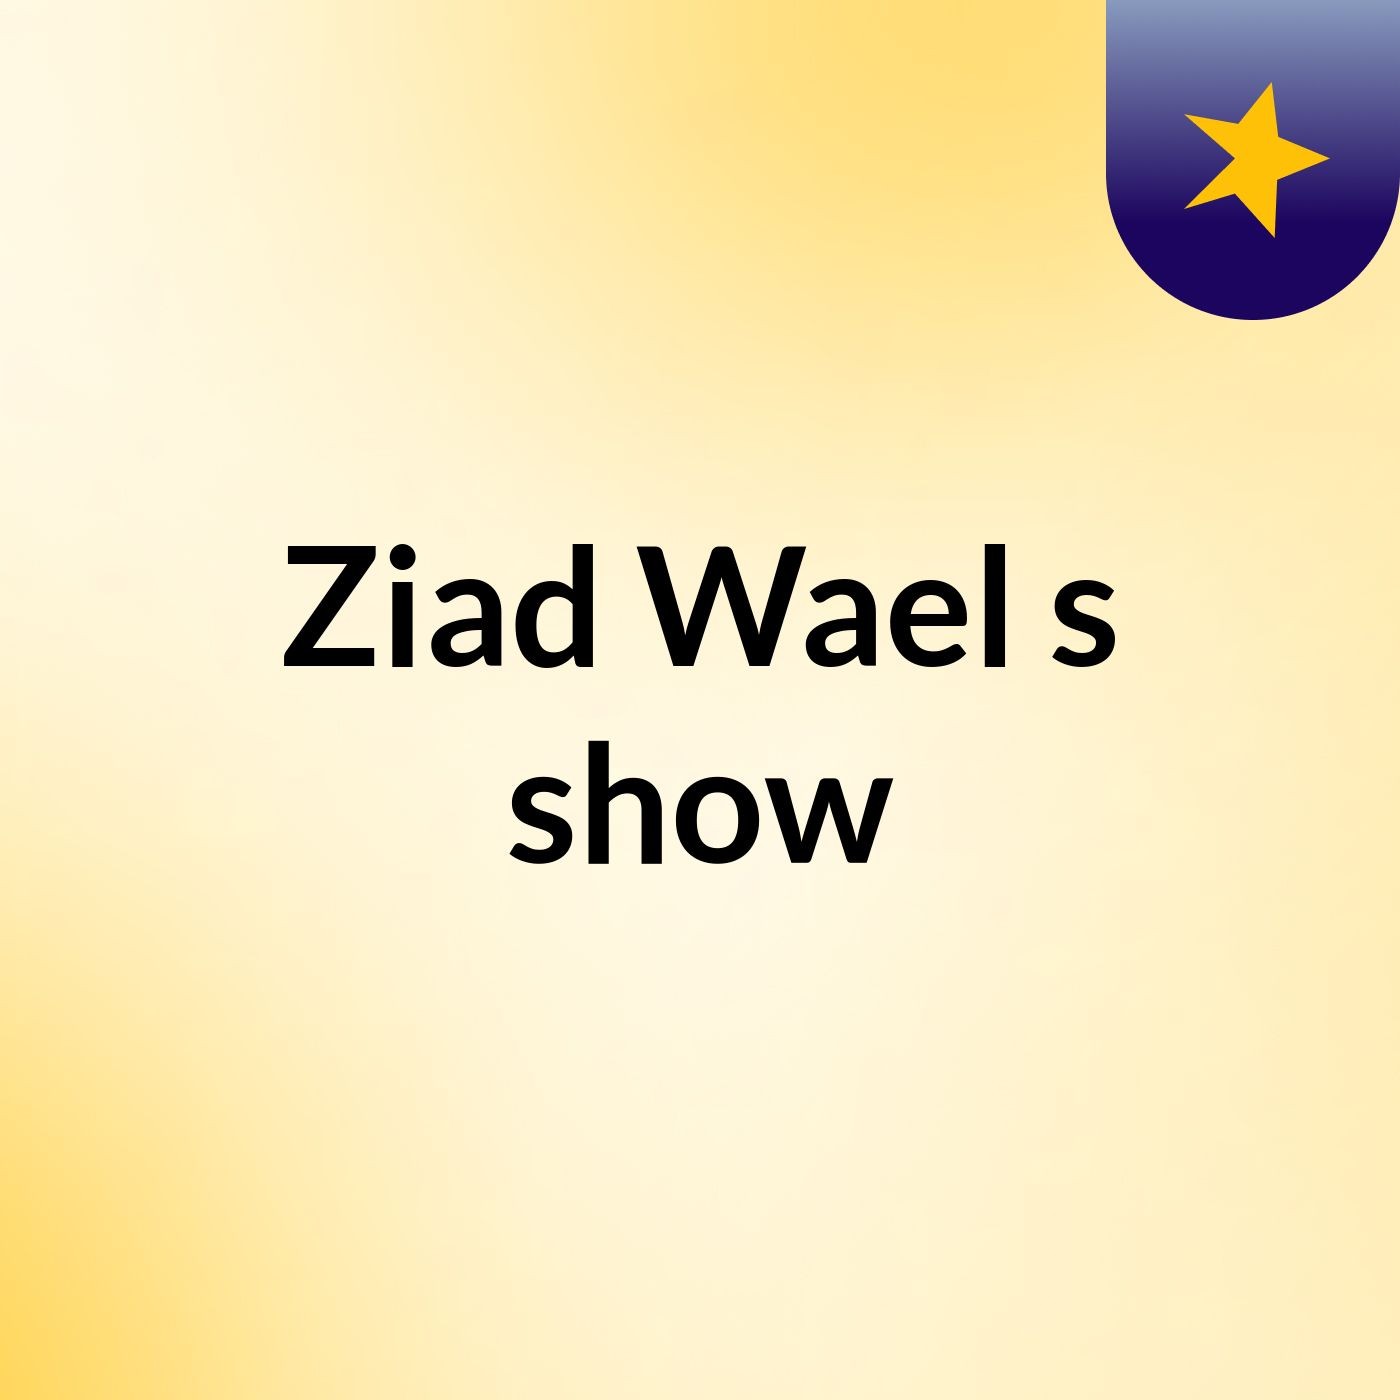 Ziad Wael's show